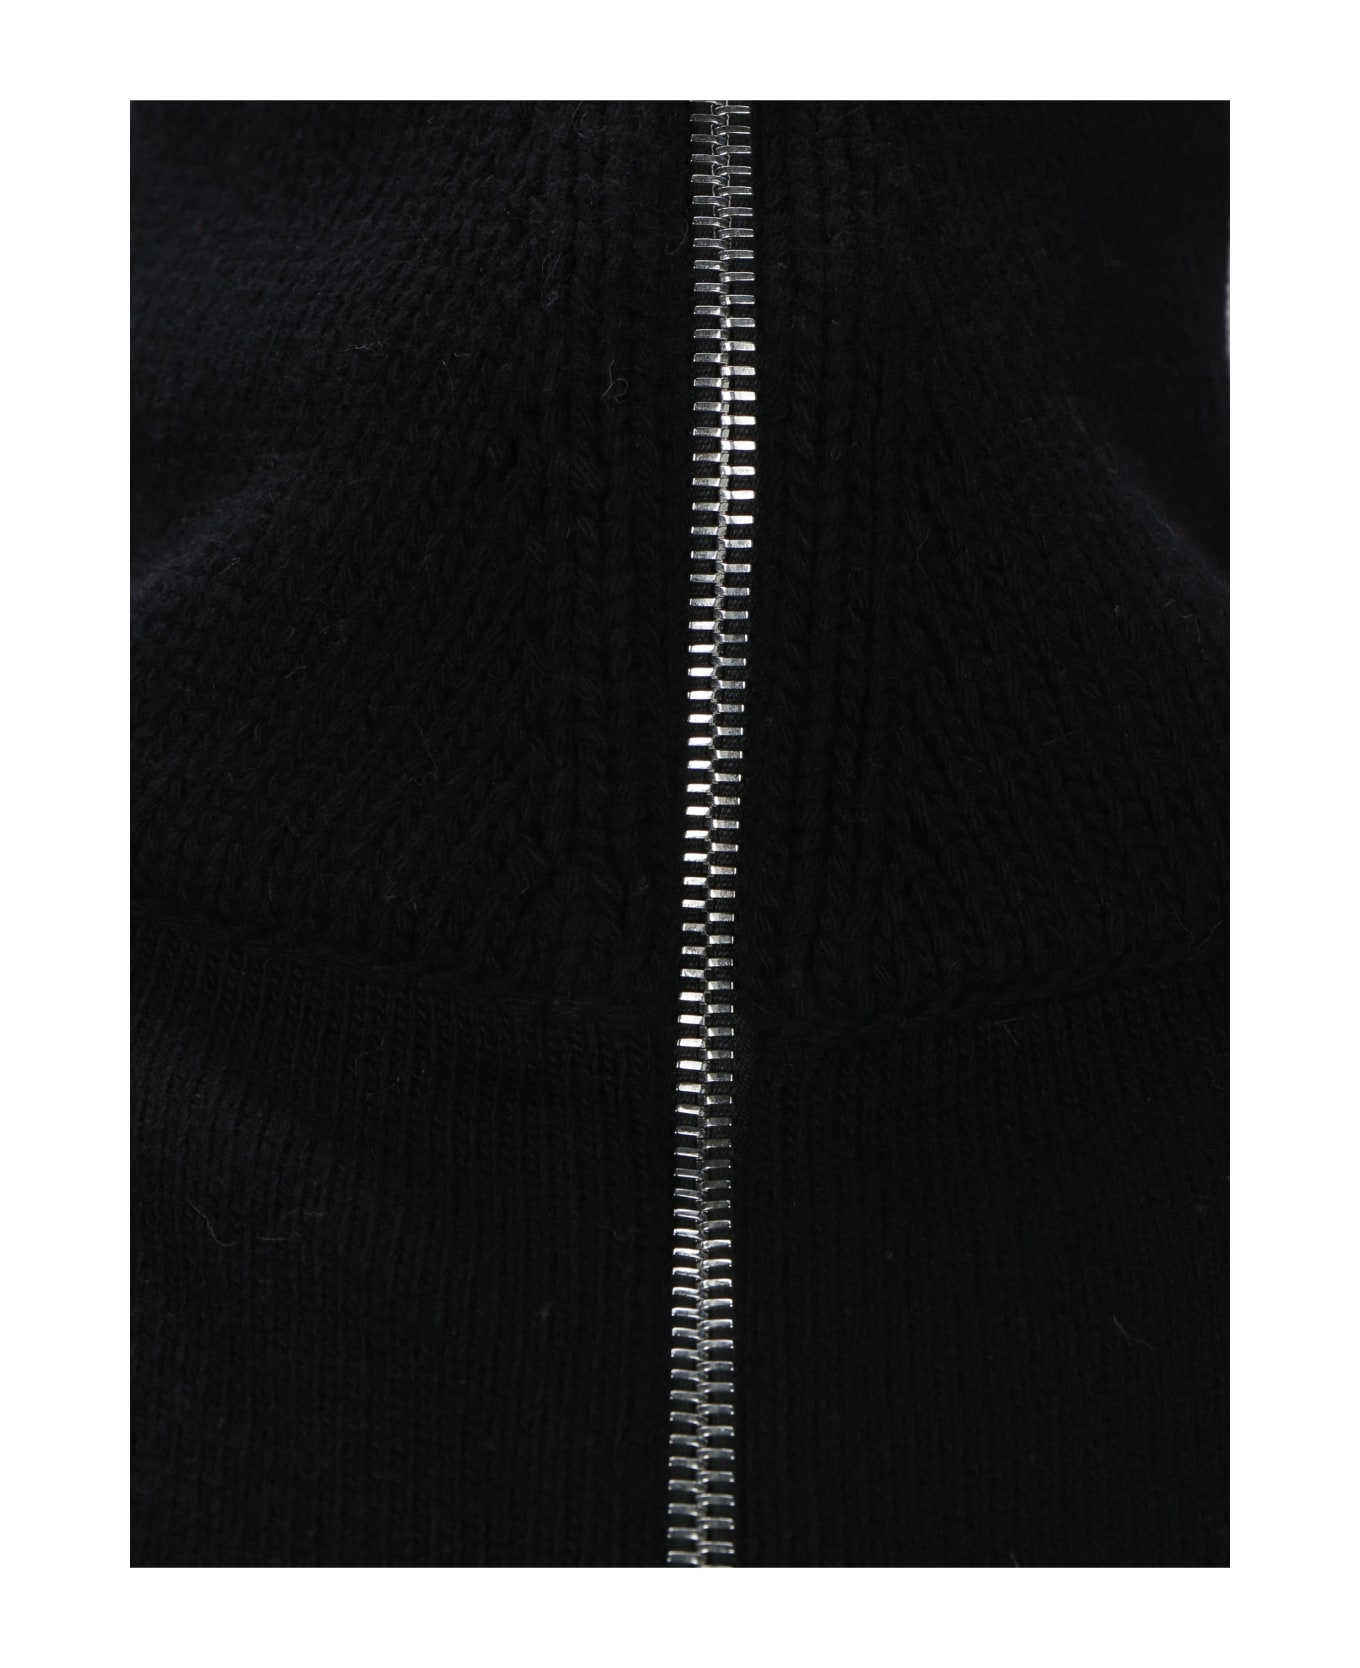 Alexander McQueen Balloon Sleeves Sweater - Black ジャケット